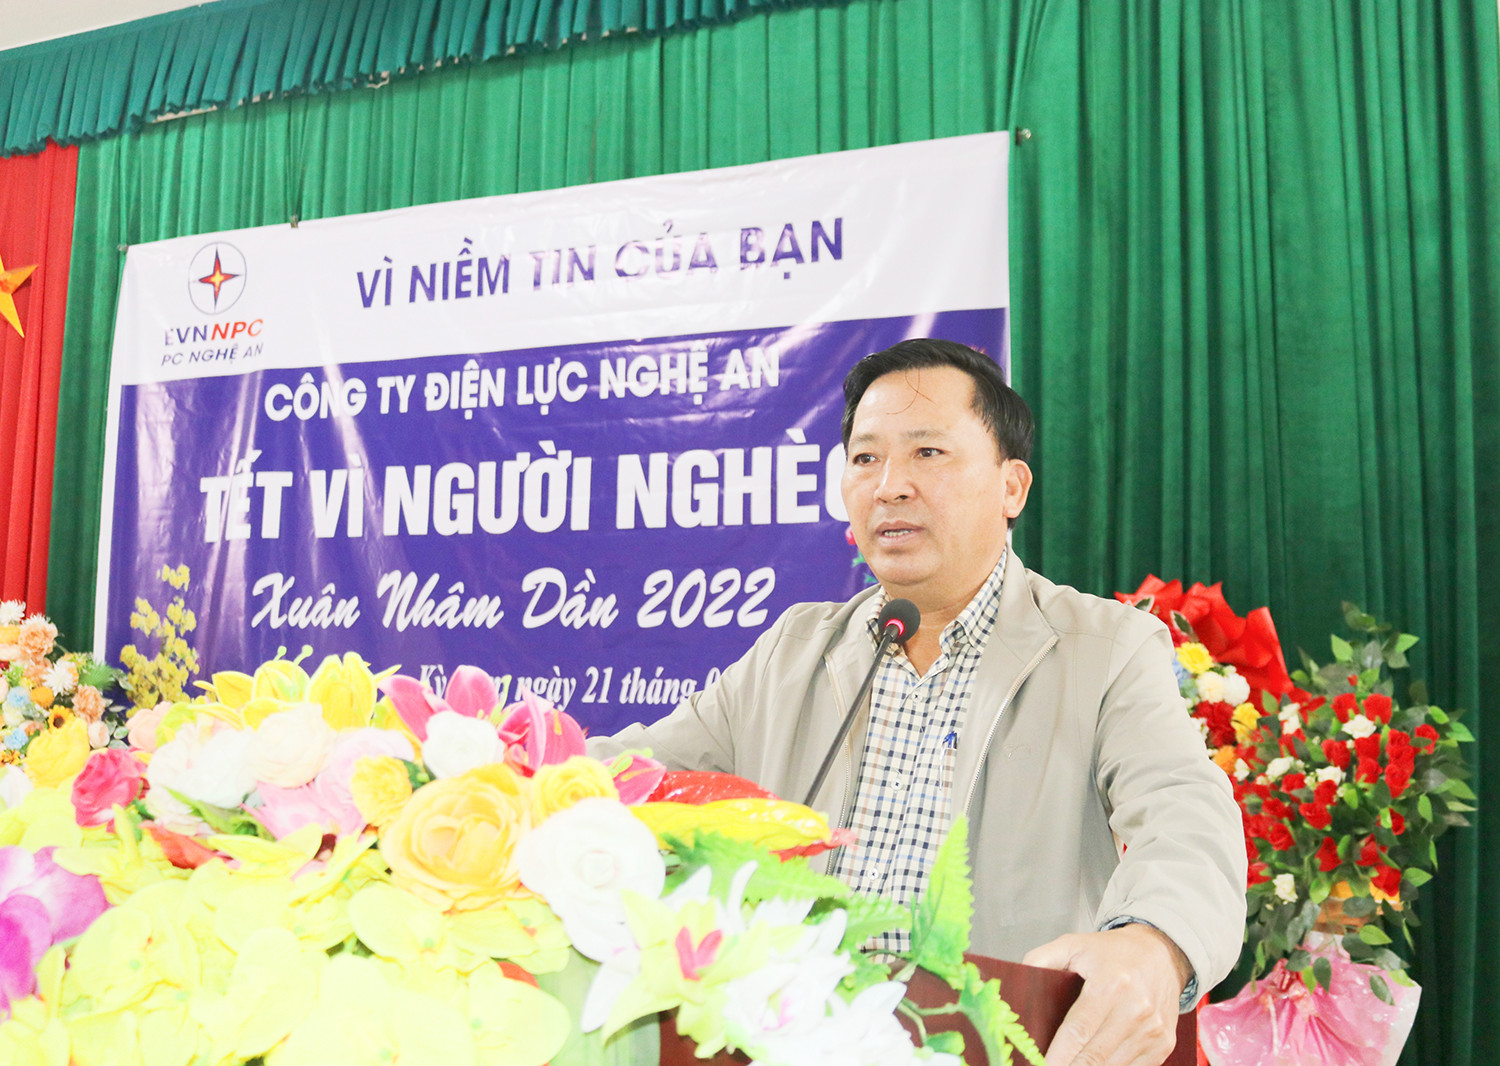 Phó Giám đốc Nguyễn Xuân Lợi phát biểu tại buổi lễ. Ảnh: Thanh Lê